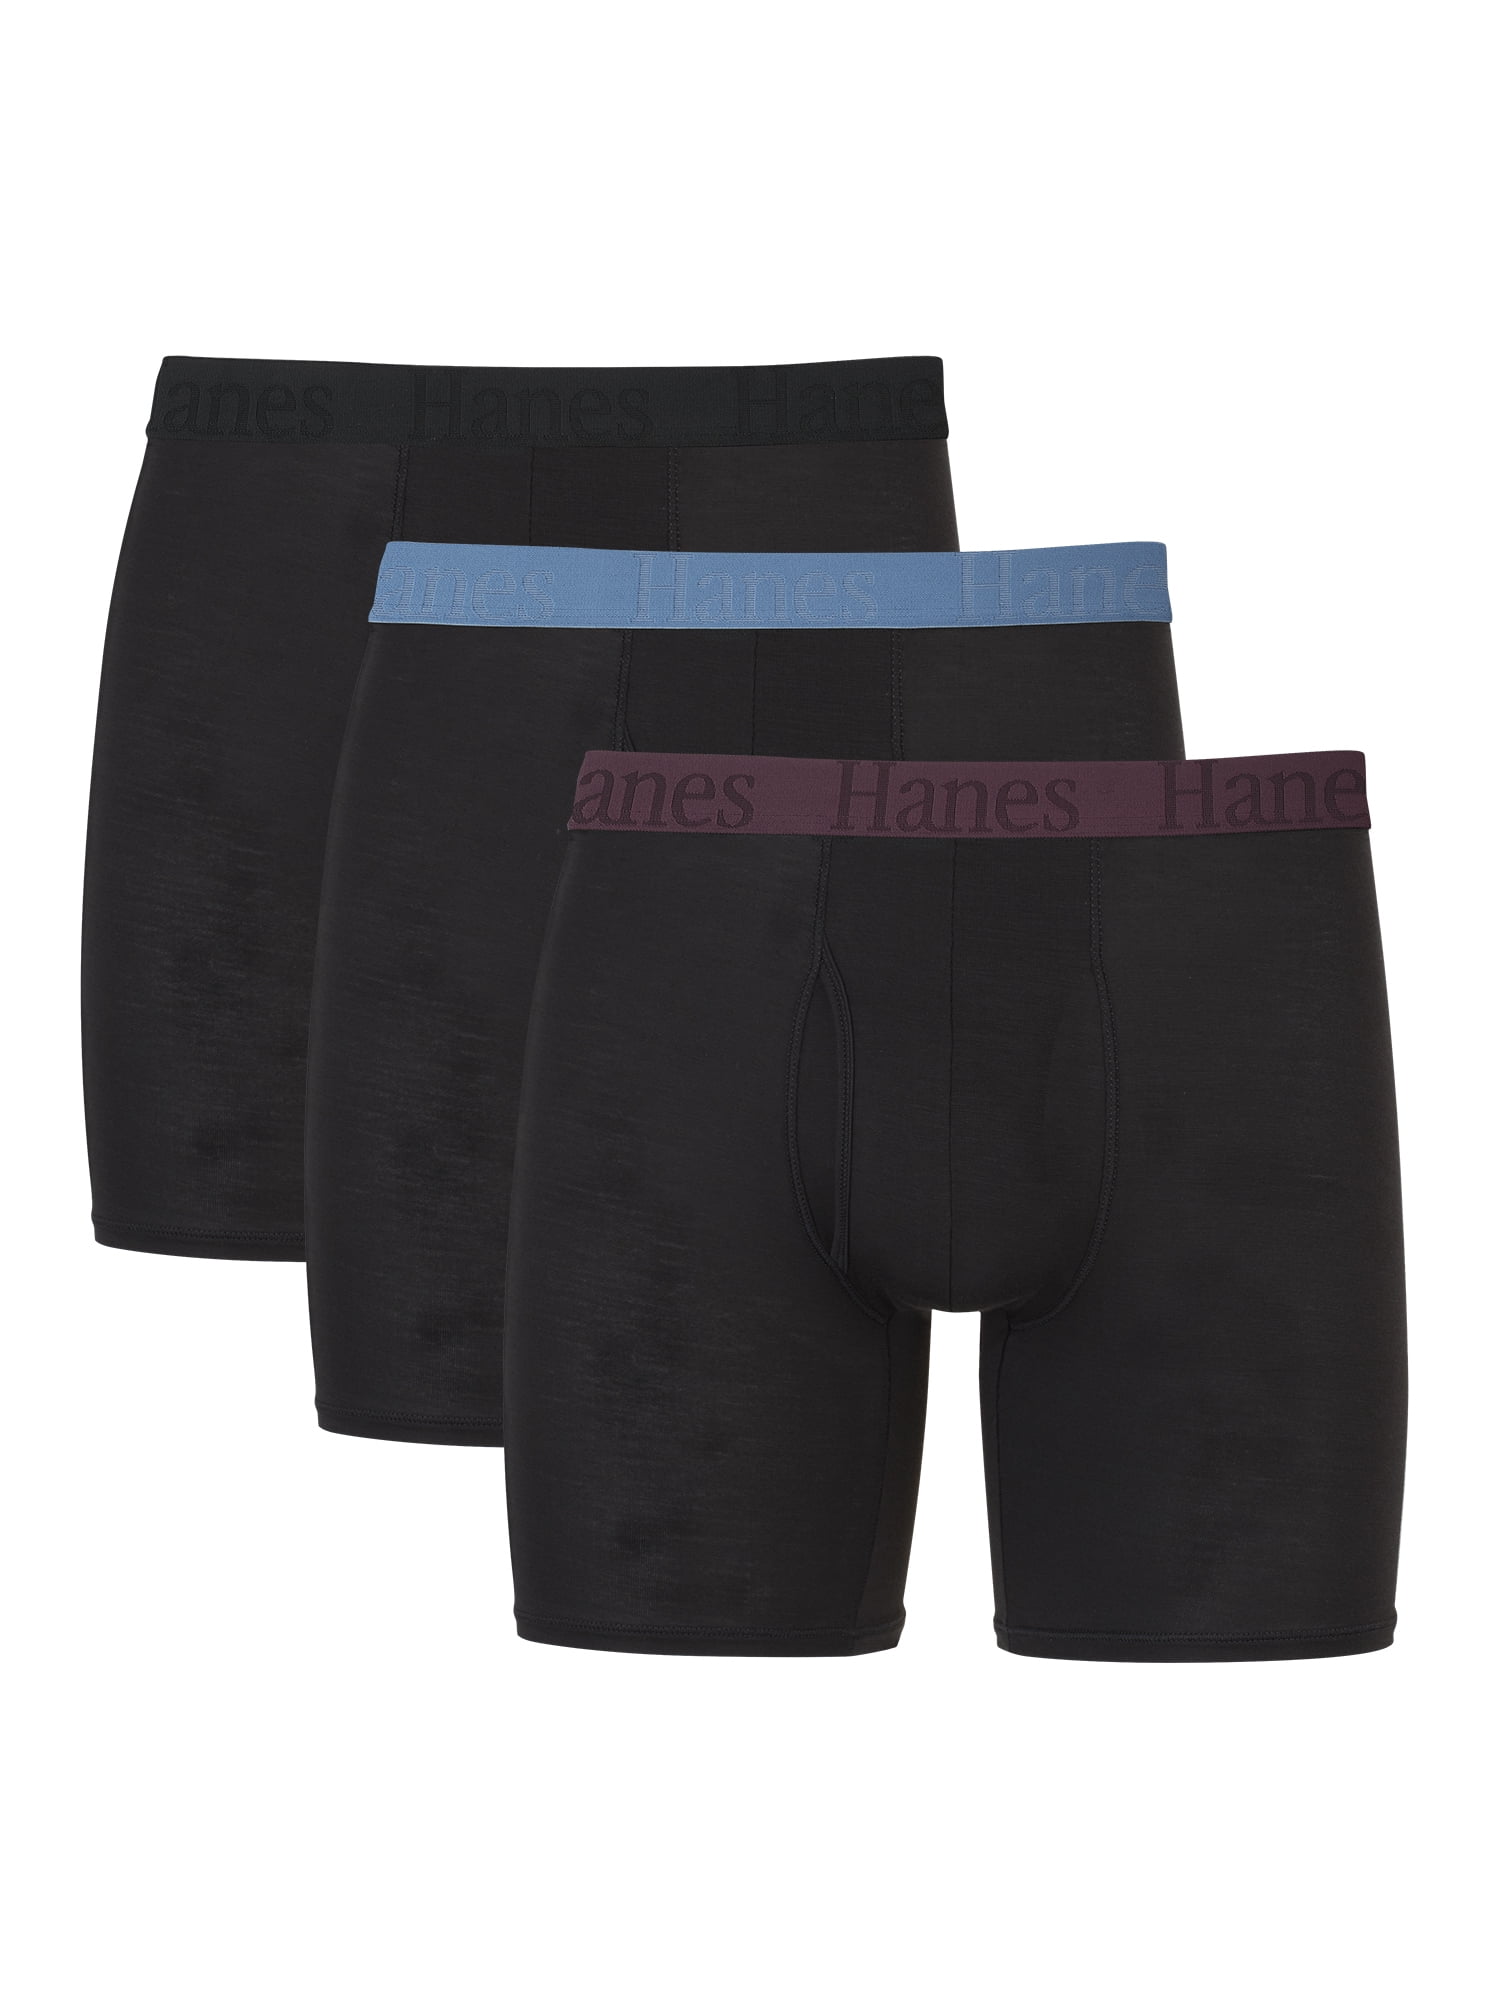 Hanes Originals Men's SuperSoft Boxer Brief Underwear, 3-Pack, Sizes S ...